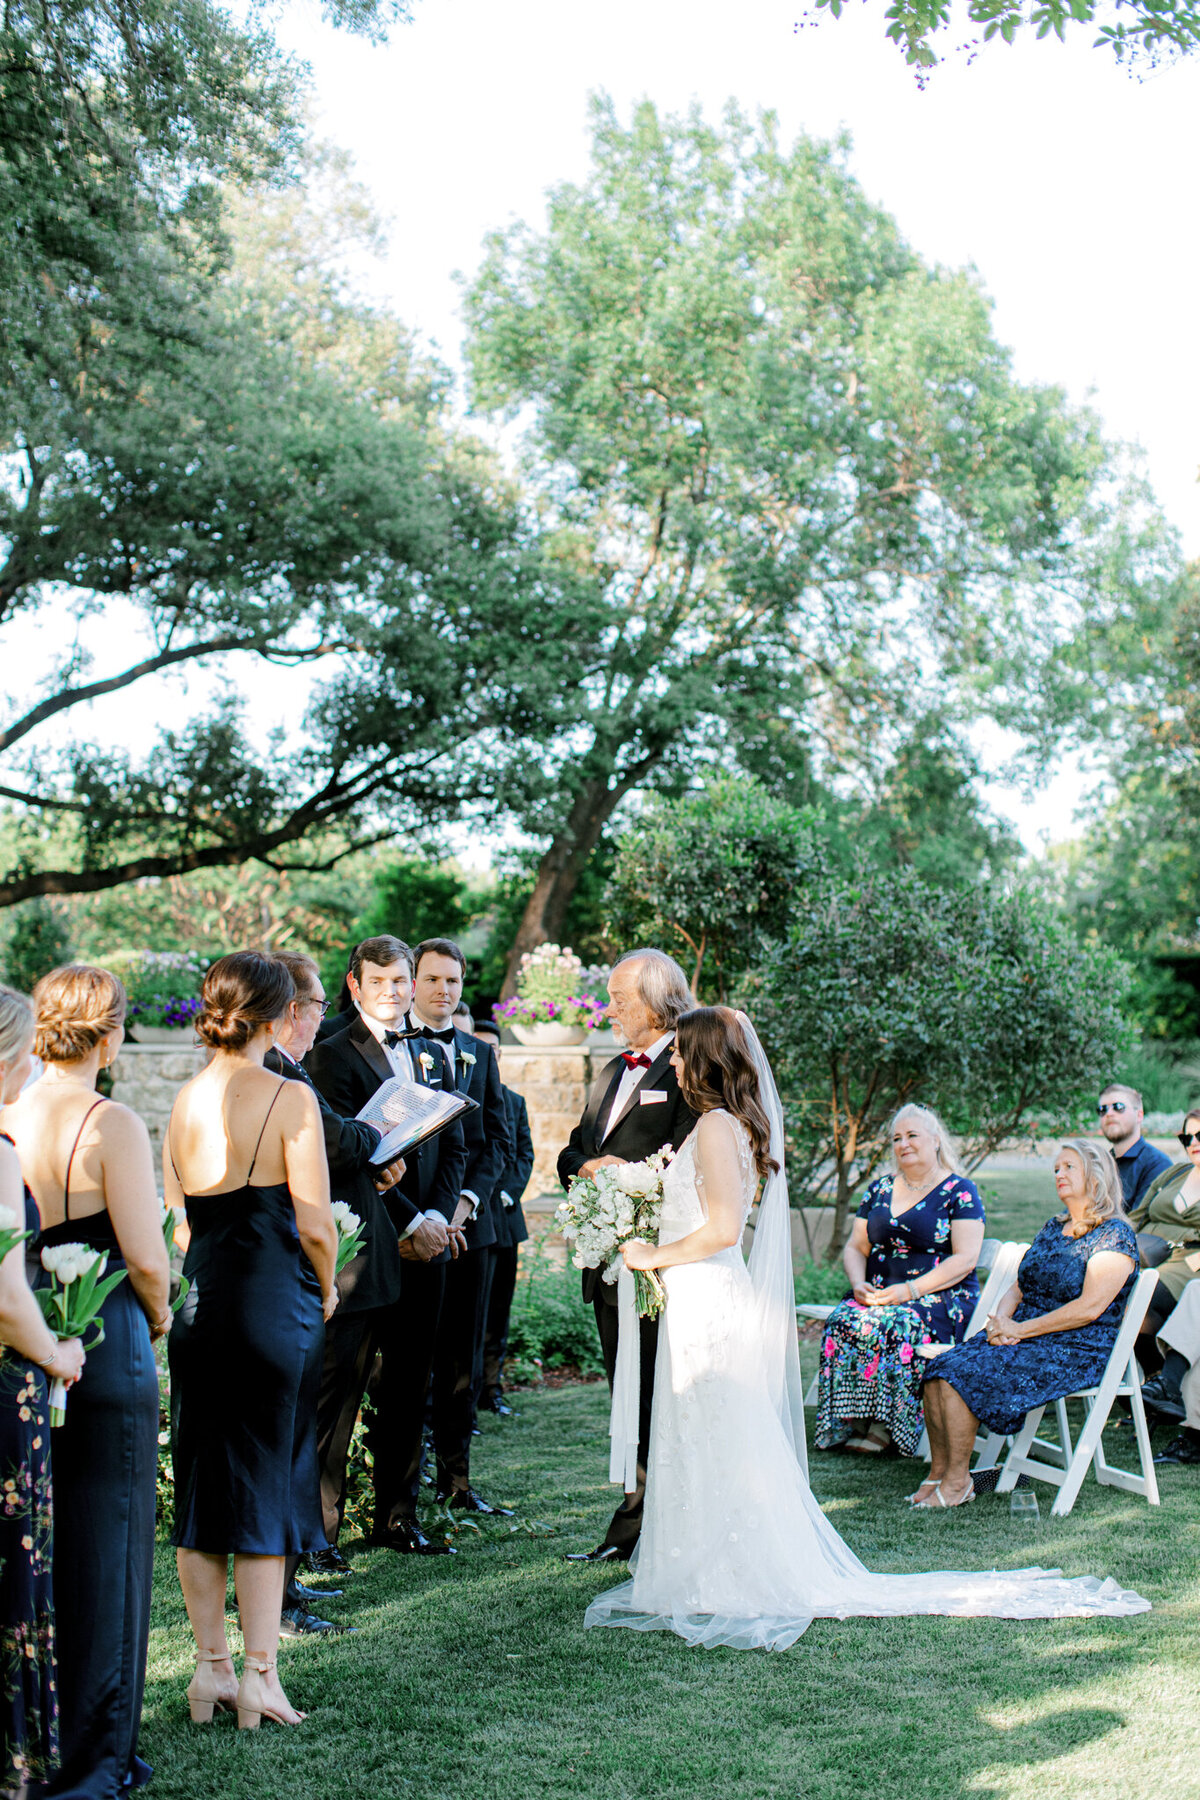 Gena & Matt's Wedding at the Dallas Arboretum | Dallas Wedding Photographer | Sami Kathryn Photography-138